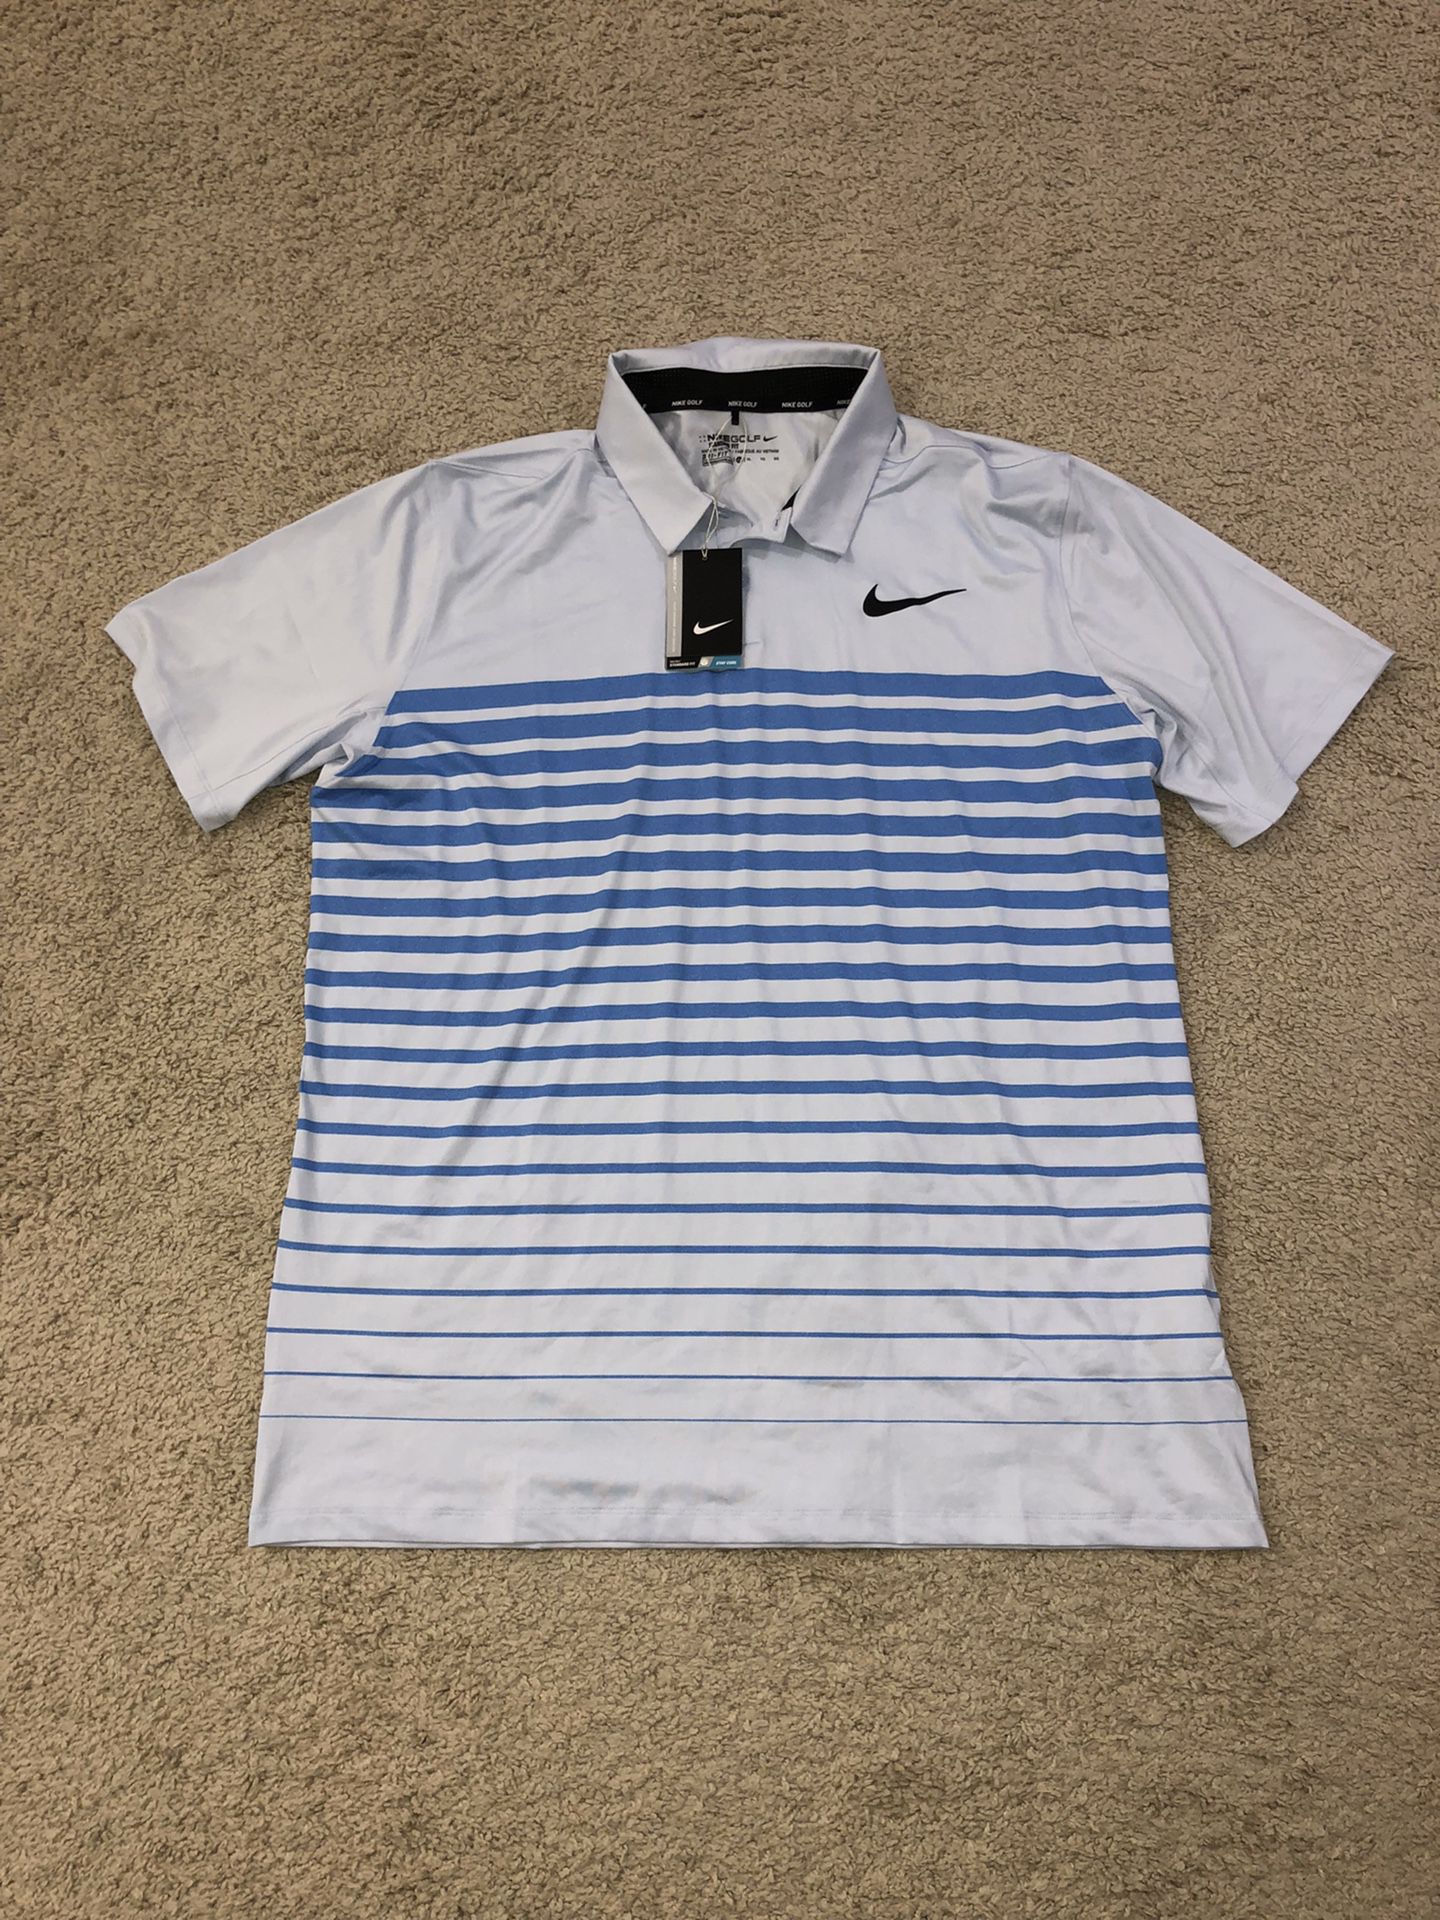 New Nike Dri Fit Golf Shirt Size XL